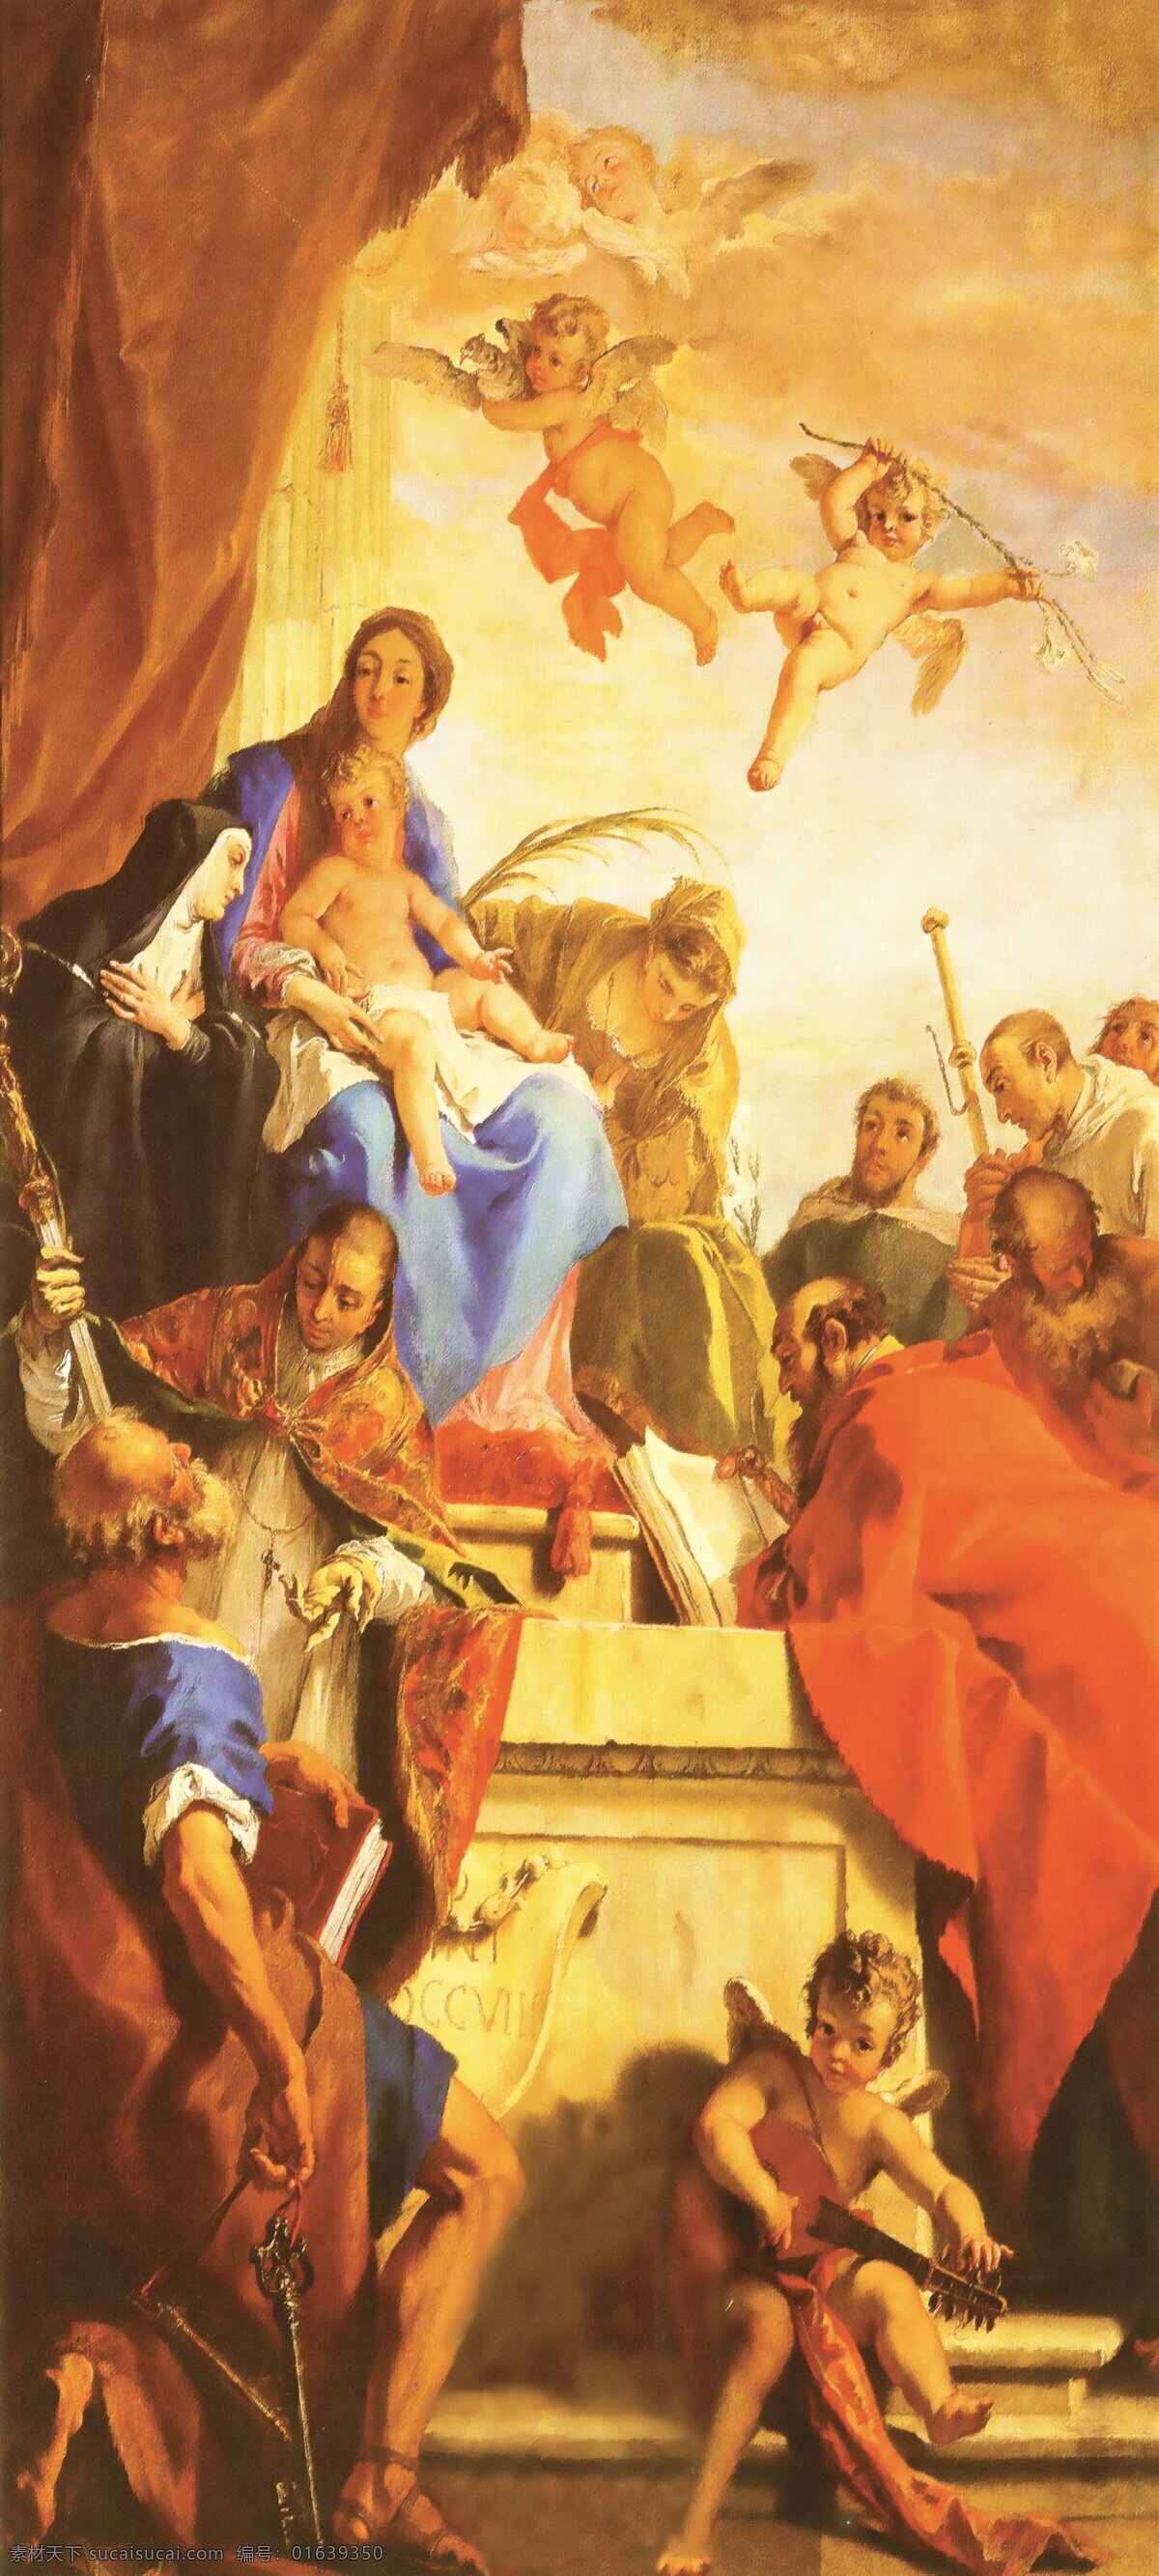 基督教 油画 欧洲油画 人物油画 油画设计 皇室油画 装饰素材